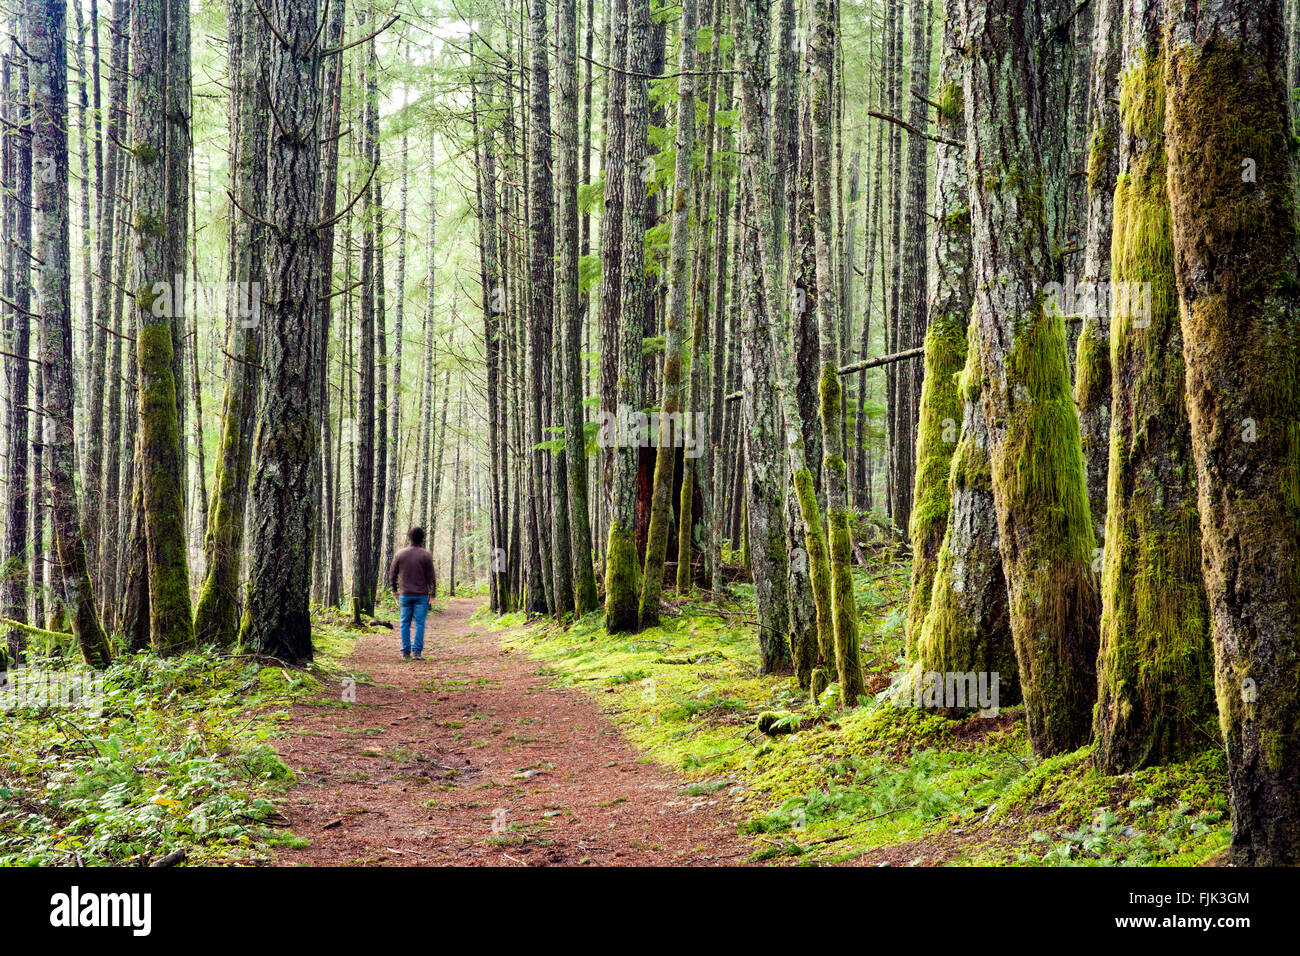 Sentier forestier dans la région de Duncan, île de Vancouver, Colombie-Britannique, Canada Banque D'Images